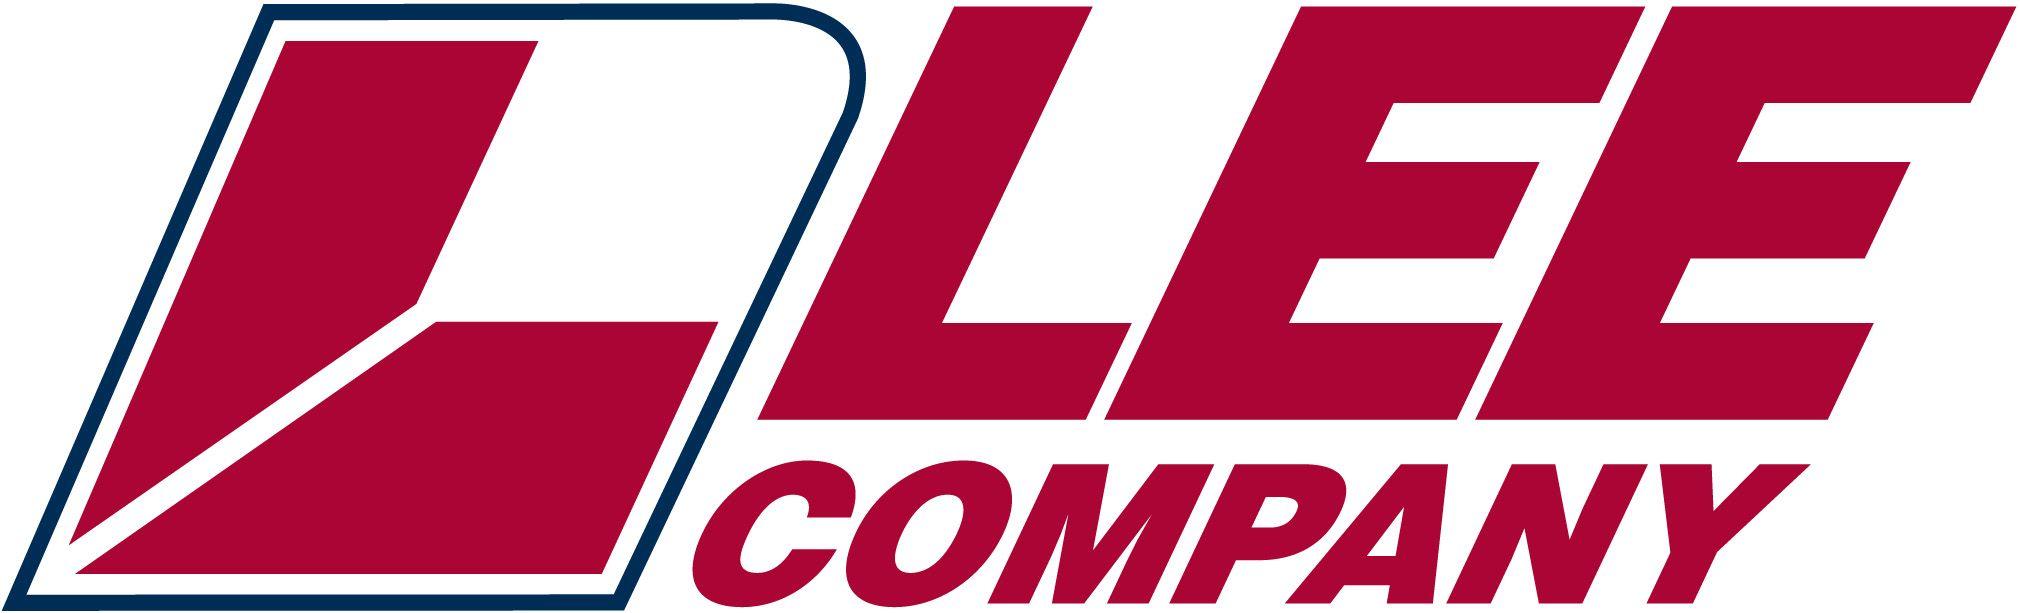 Lee Company Logo - Lee Logos